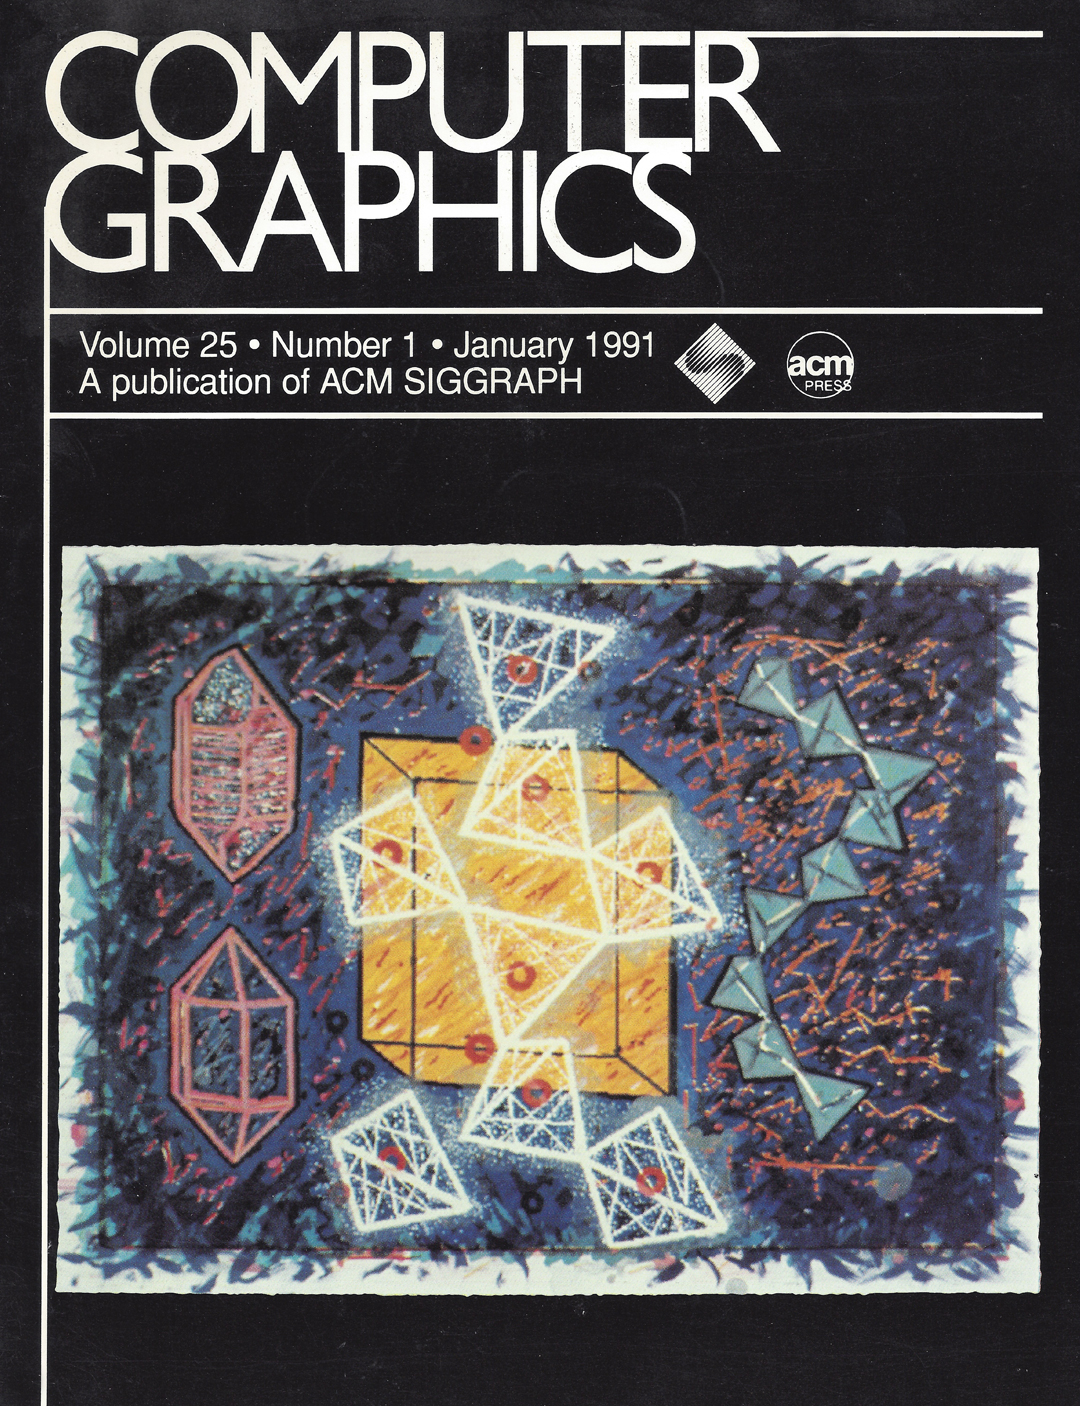 ©A publication of ACM SIGGRAPH